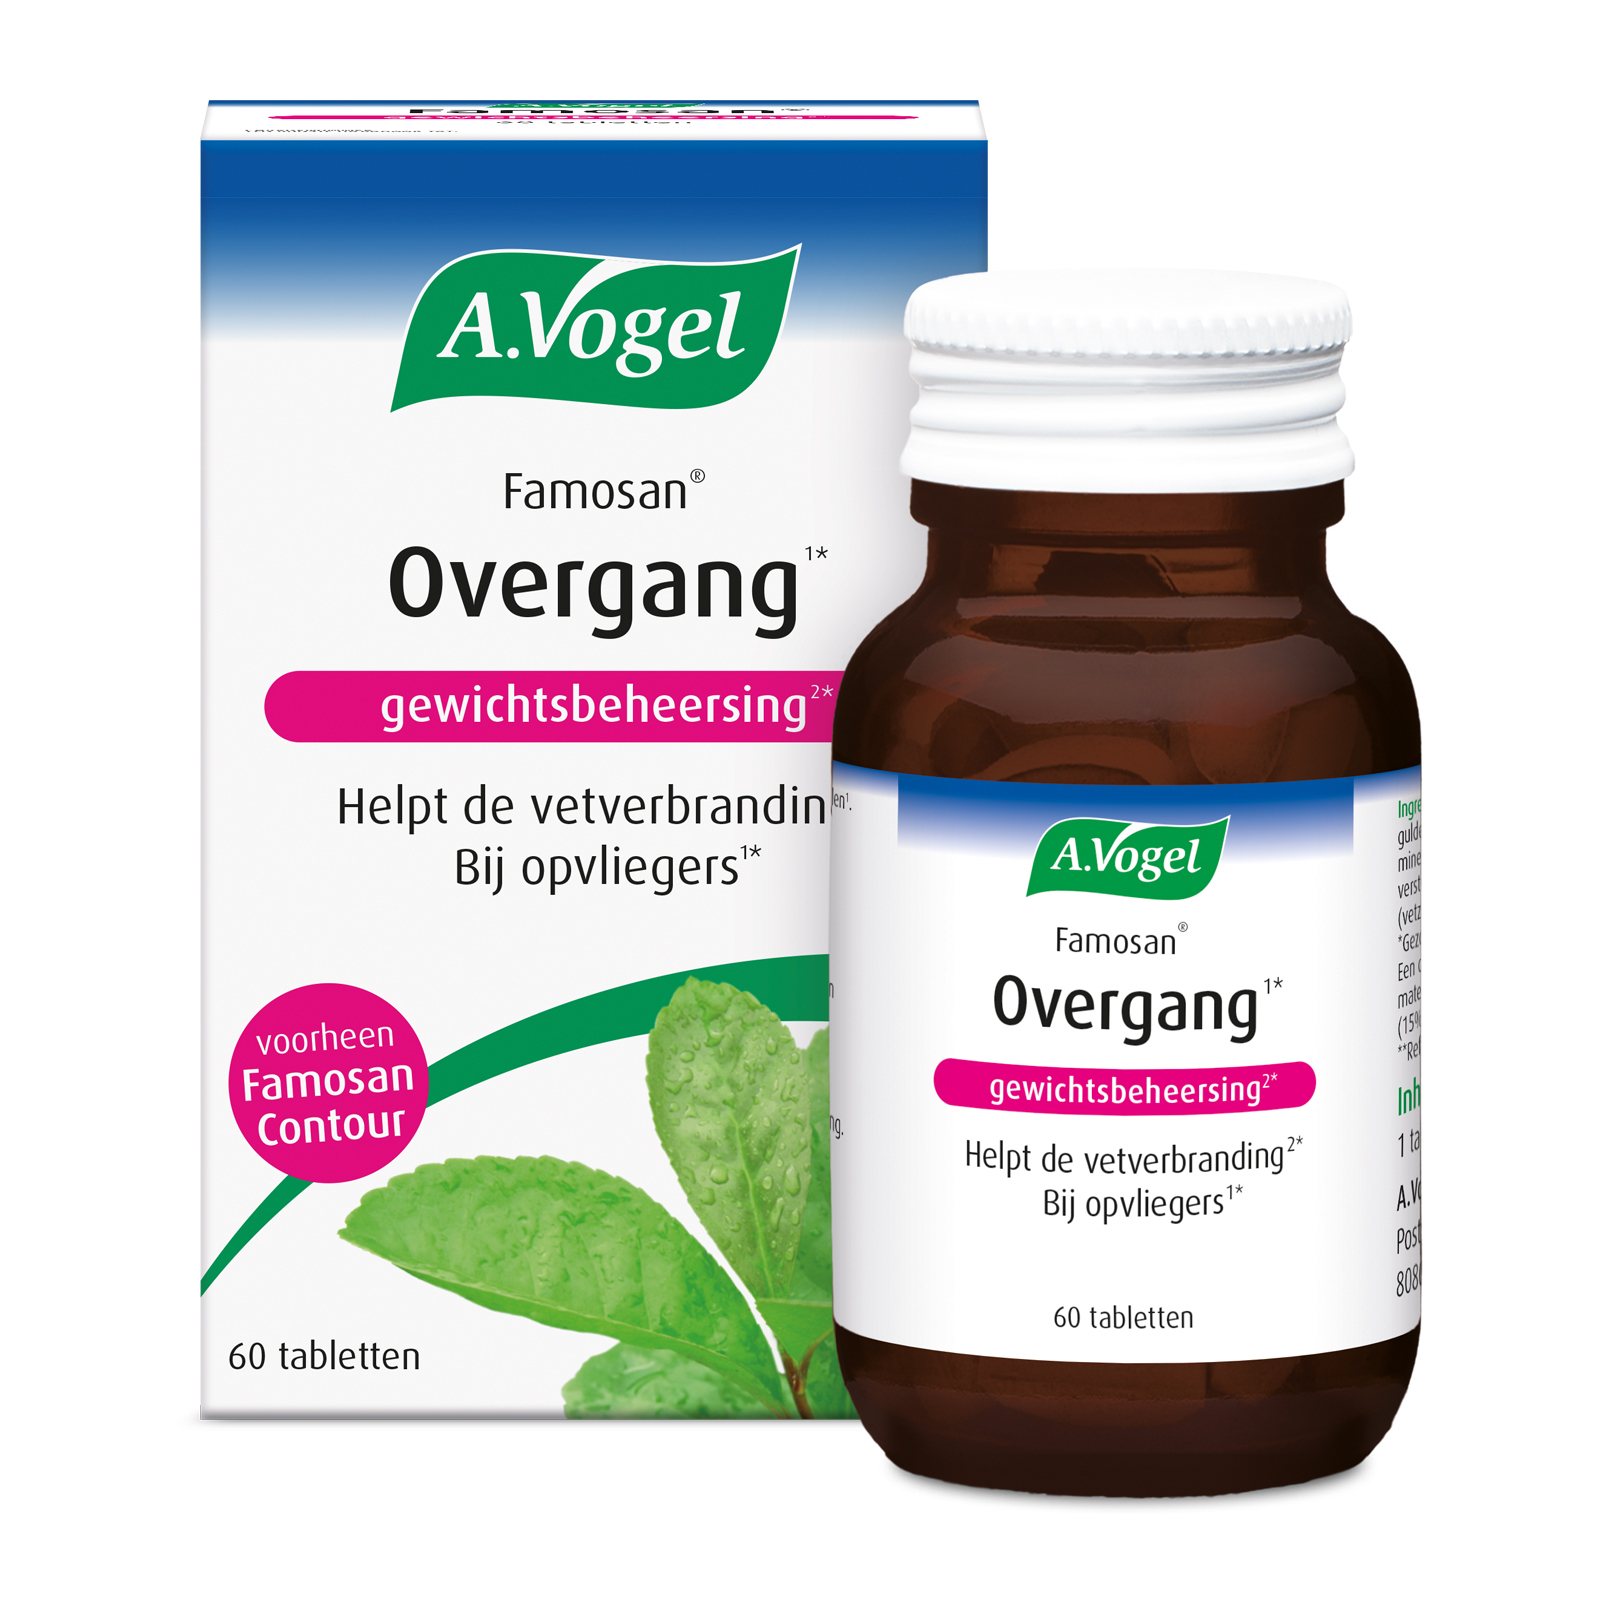 A.Vogel Famosan Overgang Gewichtsbeheersing* Tabletten